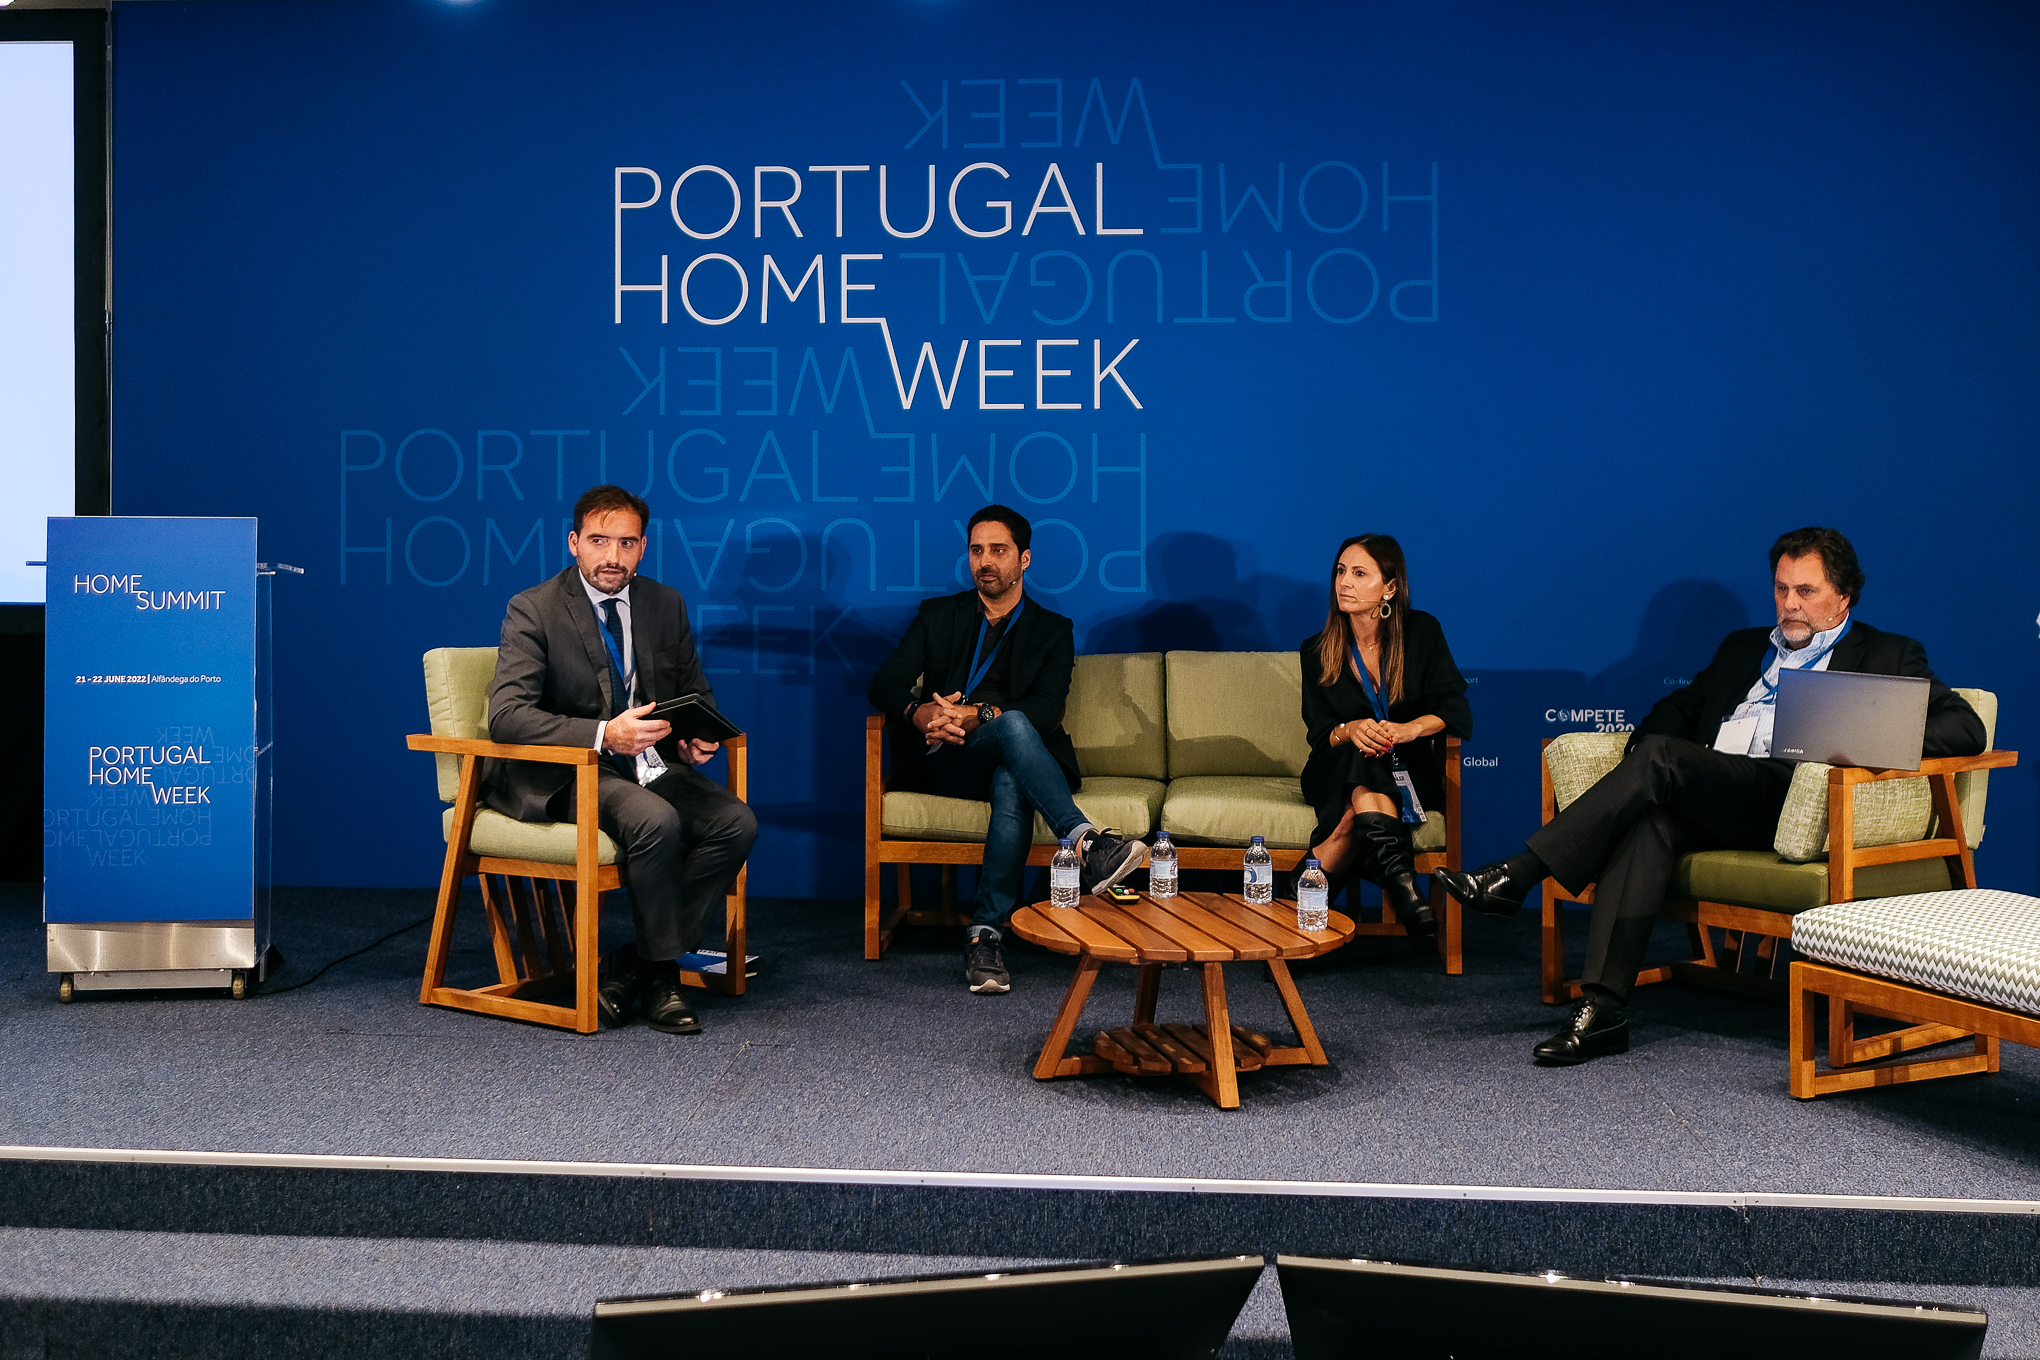 City of Porto hosts international event dedicated to the “Fileira Casa” (Household Goods)